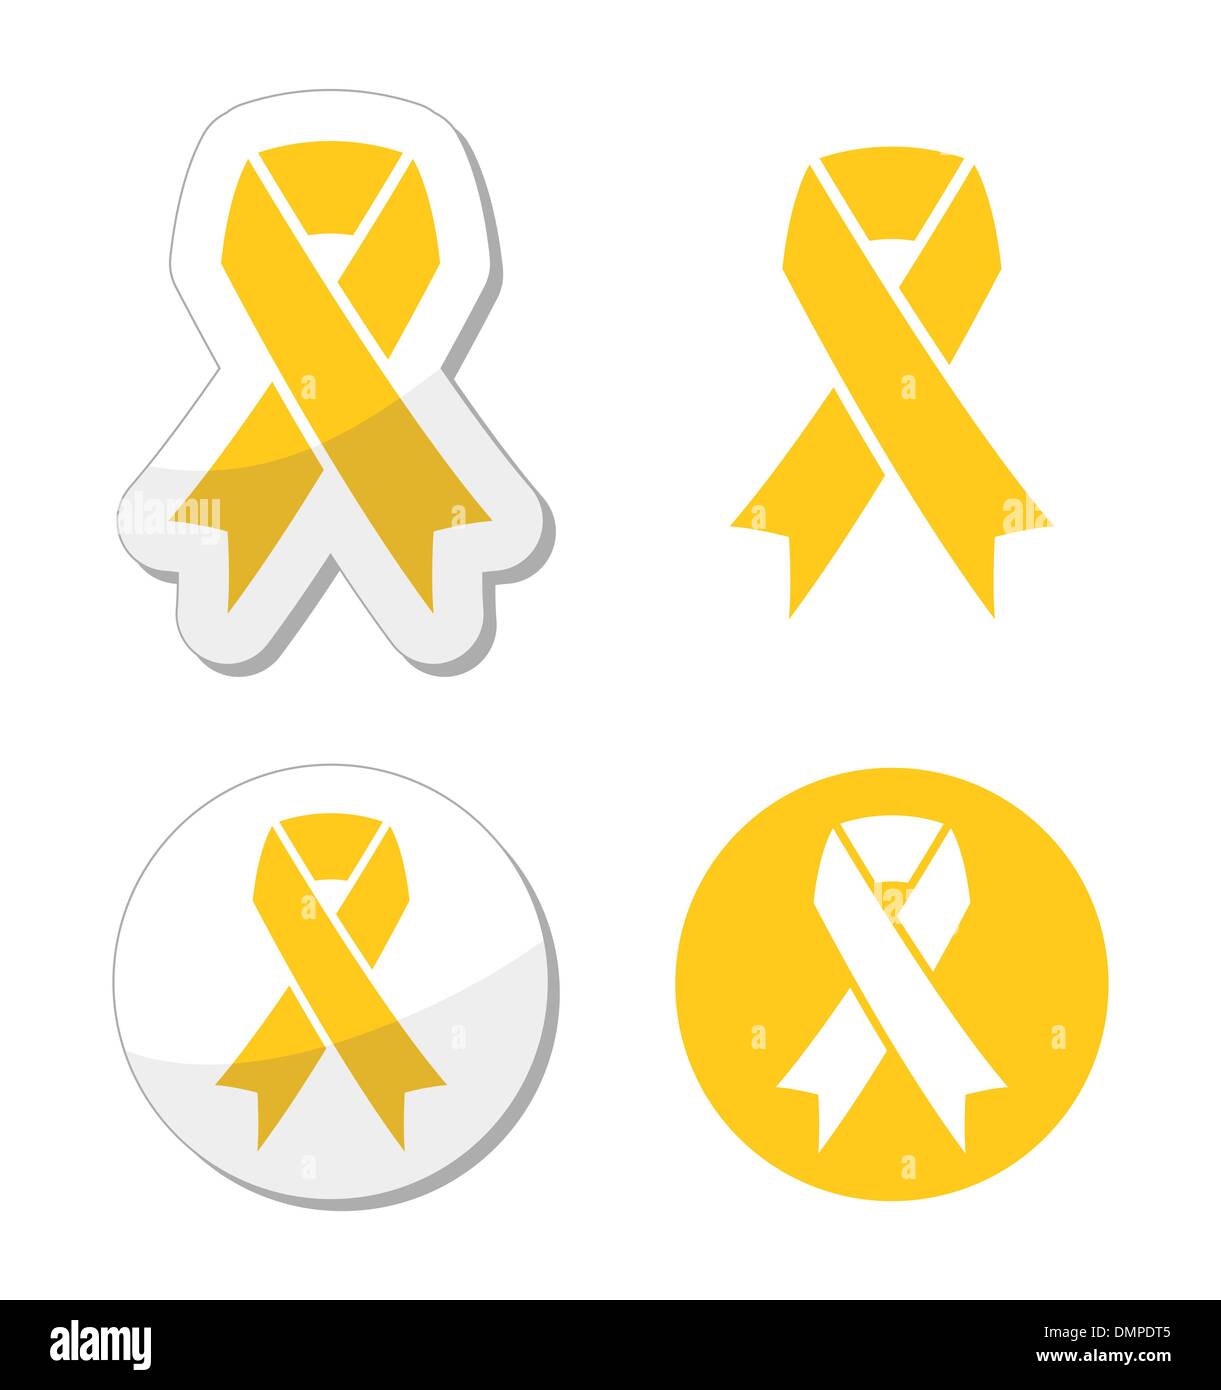 Gelbes Band - Unterstützung für Truppen, Suizidprävention, Adoptiv-Eltern-symbol Stock Vektor